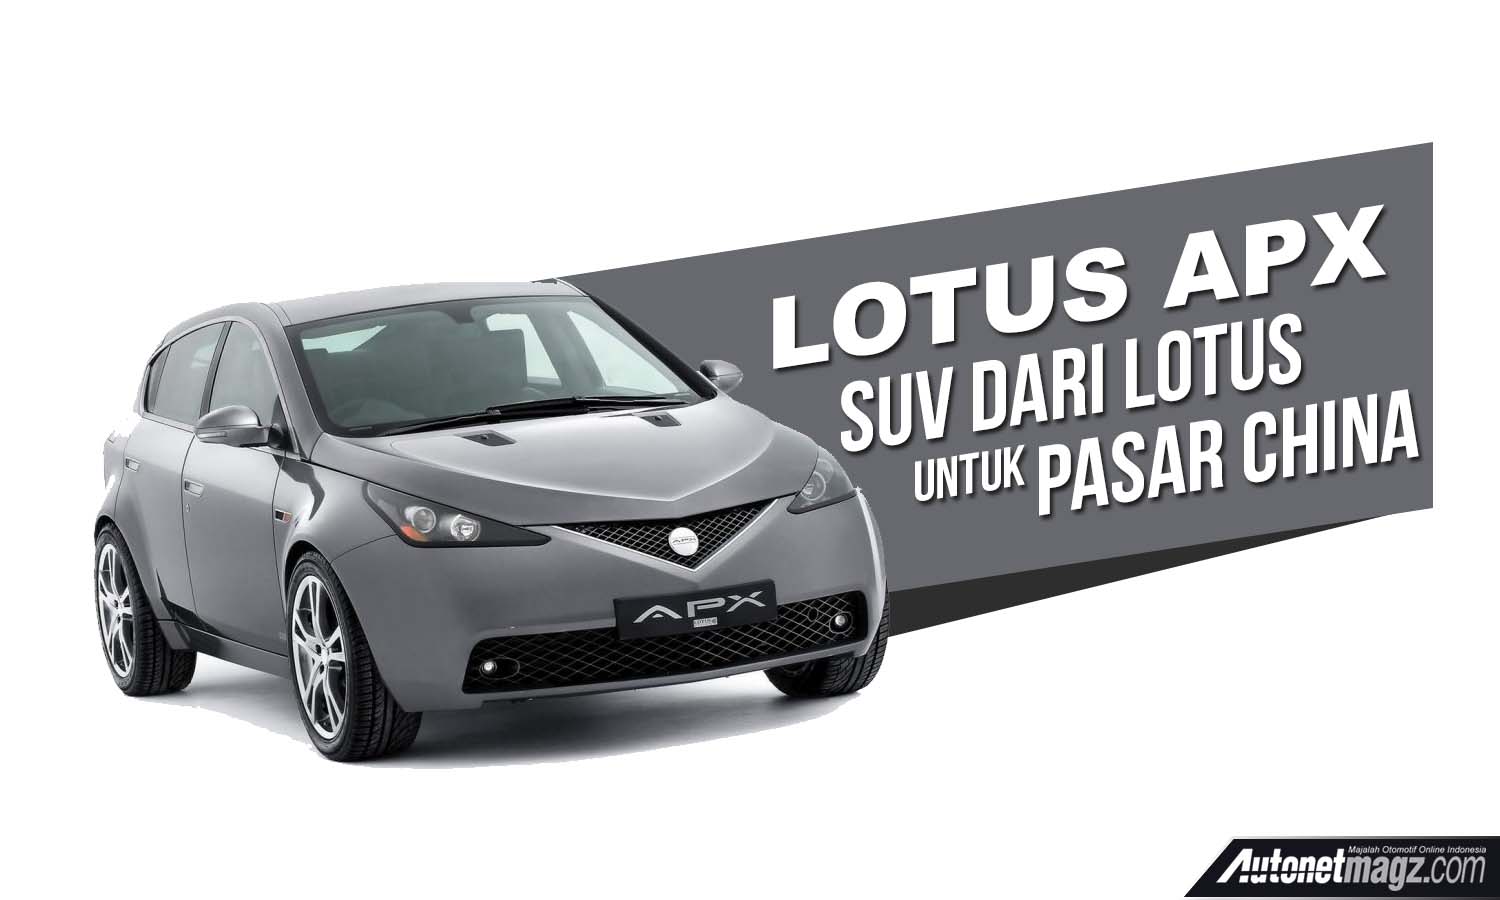 Berita, Lotus APX Cover: Lotus APX, CUV Dari Lotus Untuk Pasar China Mendekati Realita